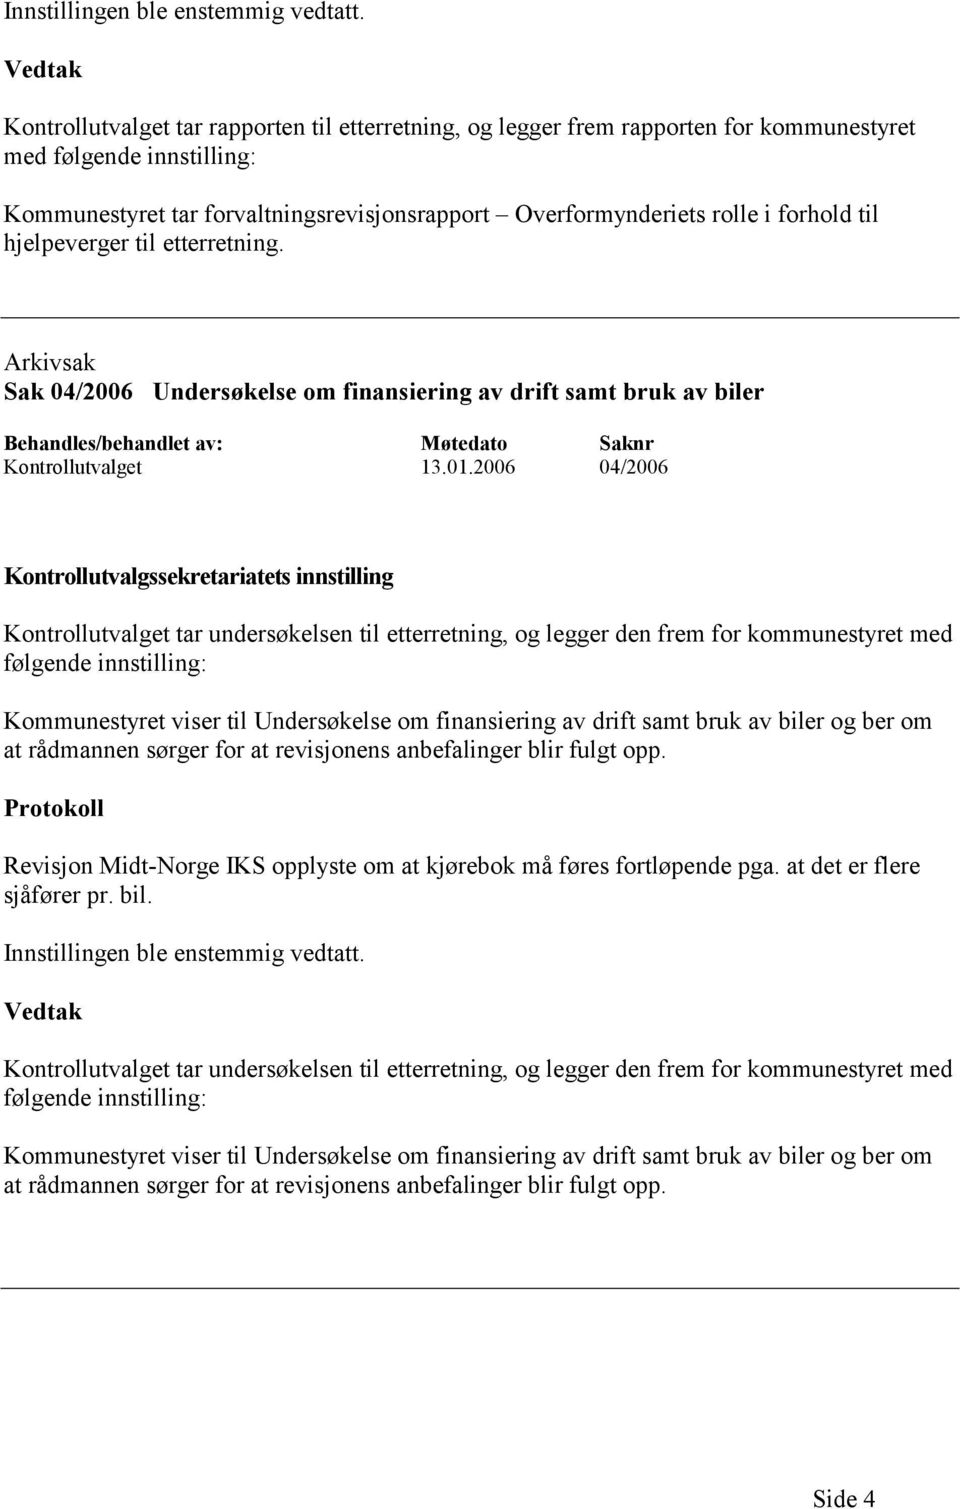 til hjelpeverger til etterretning. Arkivsak Sak 04/2006 Undersøkelse om finansiering av drift samt bruk av biler Kontrollutvalget 13.01.